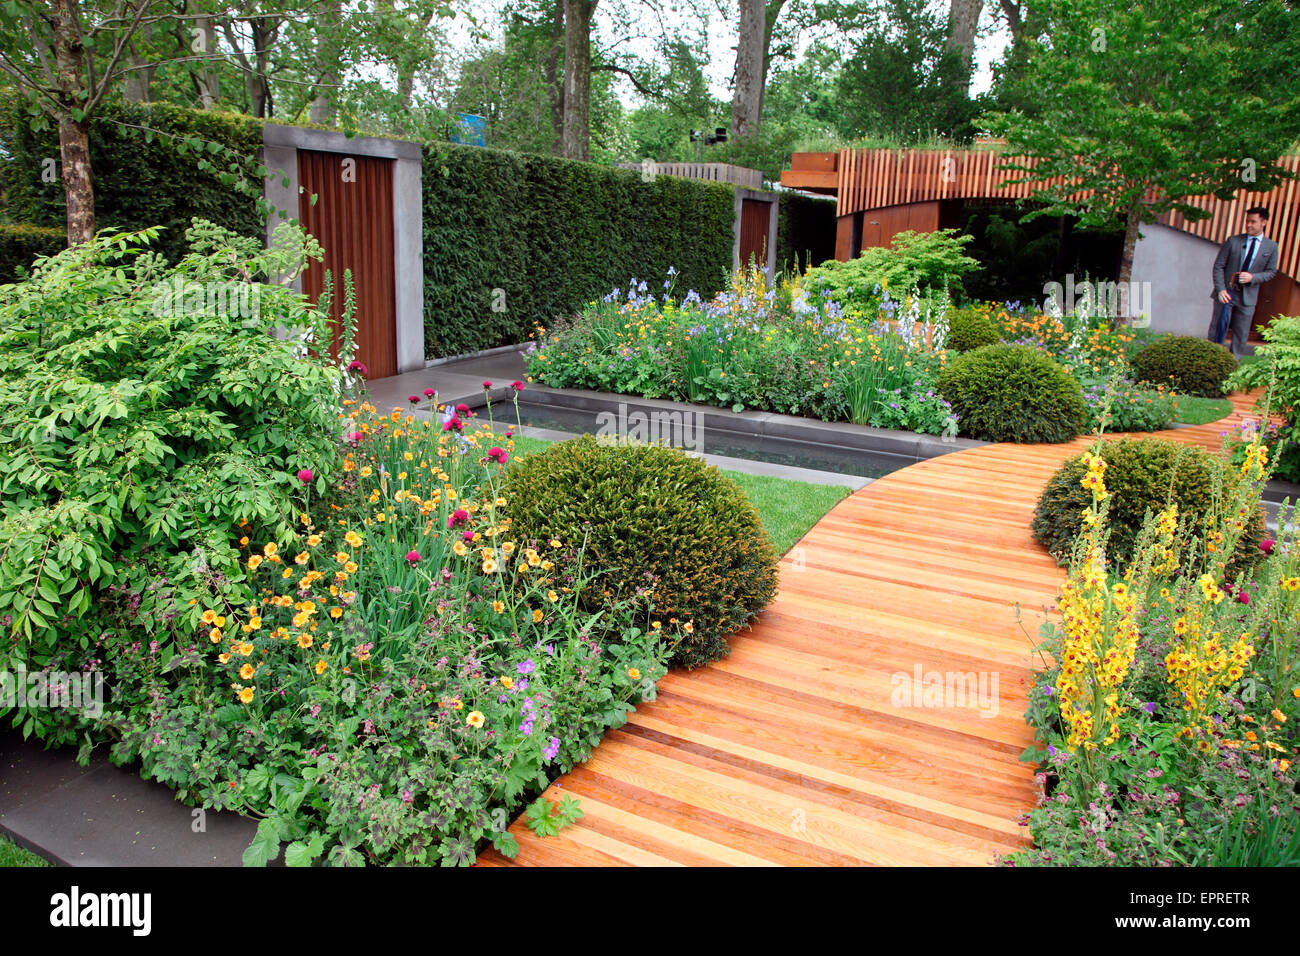 HomeBase-Garten von Adam Frost bei der RHS Chelsea Flower Show 2015. Stockfoto